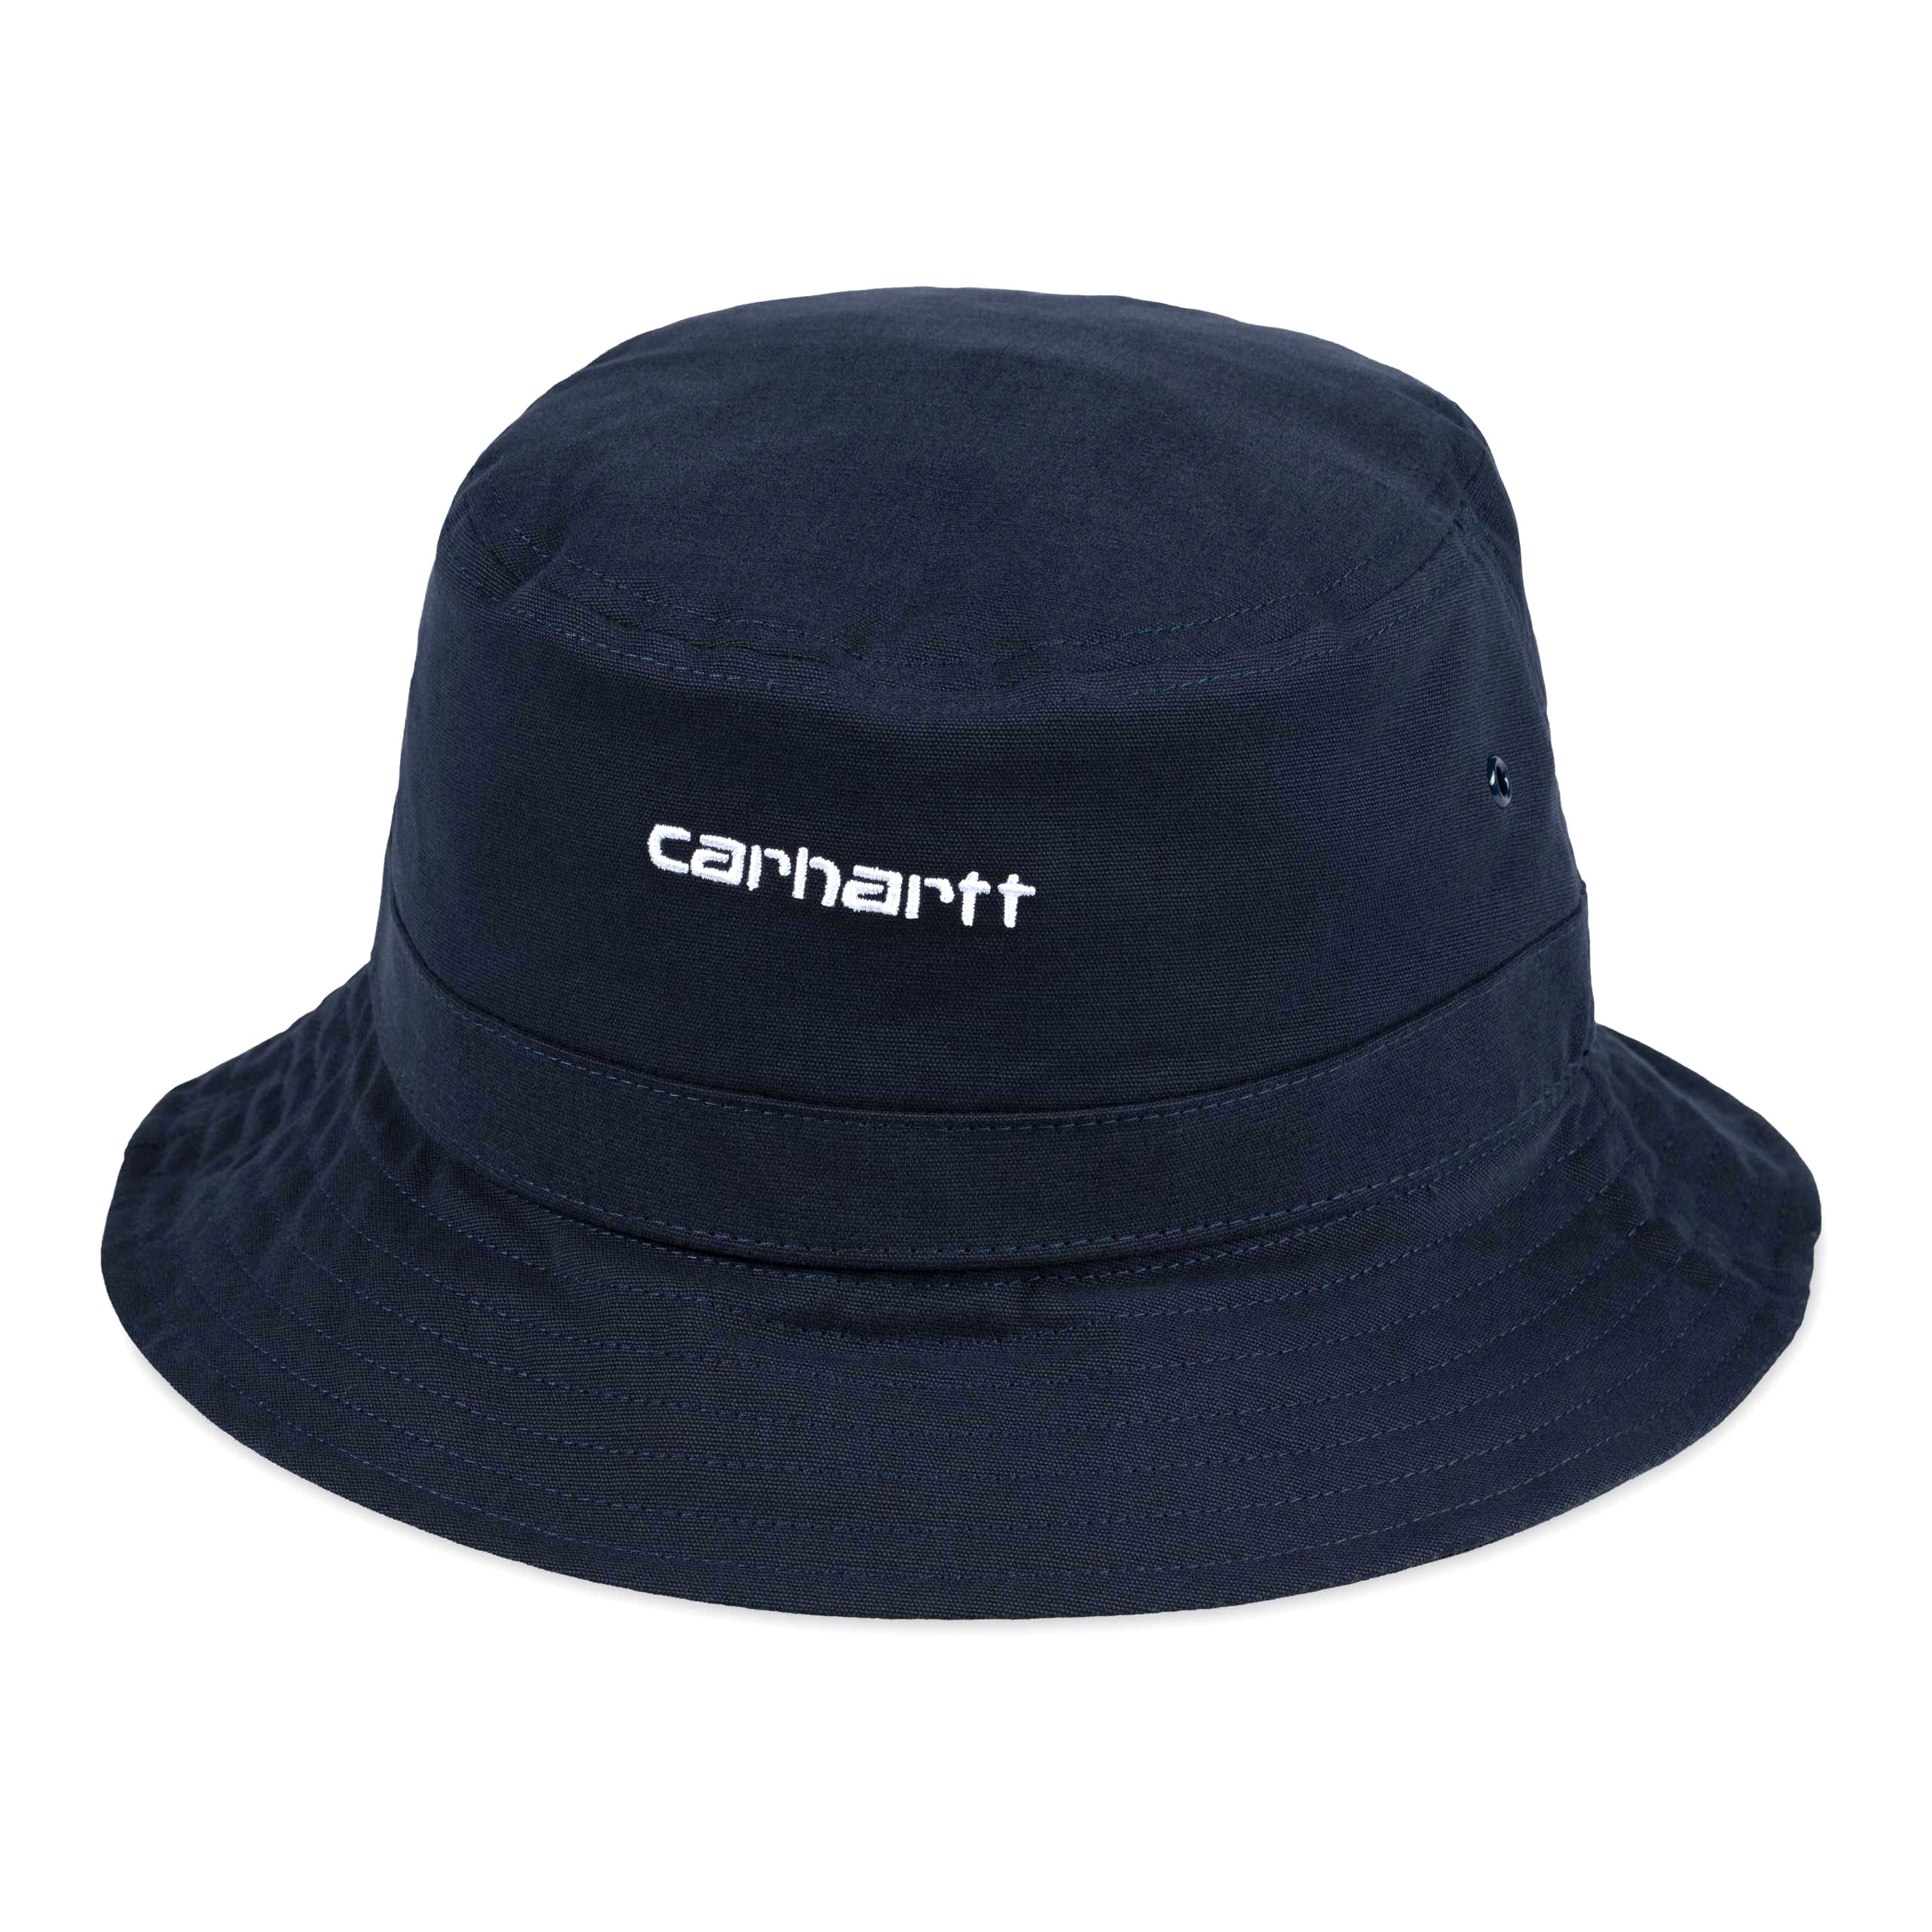 Carhartt WIP - SCRIPT BUCKET HAT - Navy